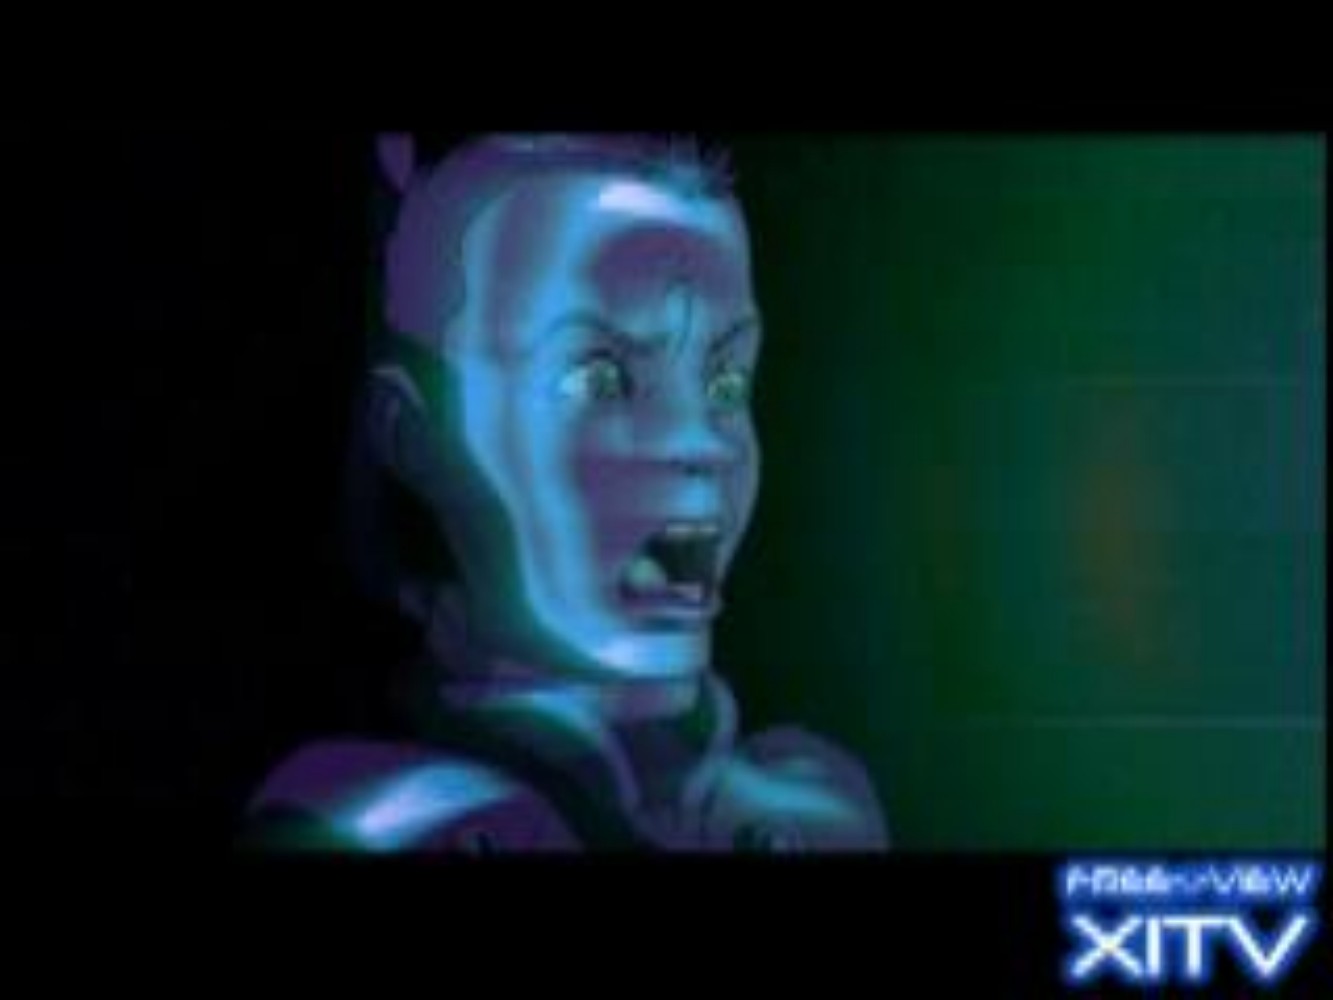 XITV FREE <> VIEW The Matrix! Starring Jada Pinckett! XITV Is Must See TV!